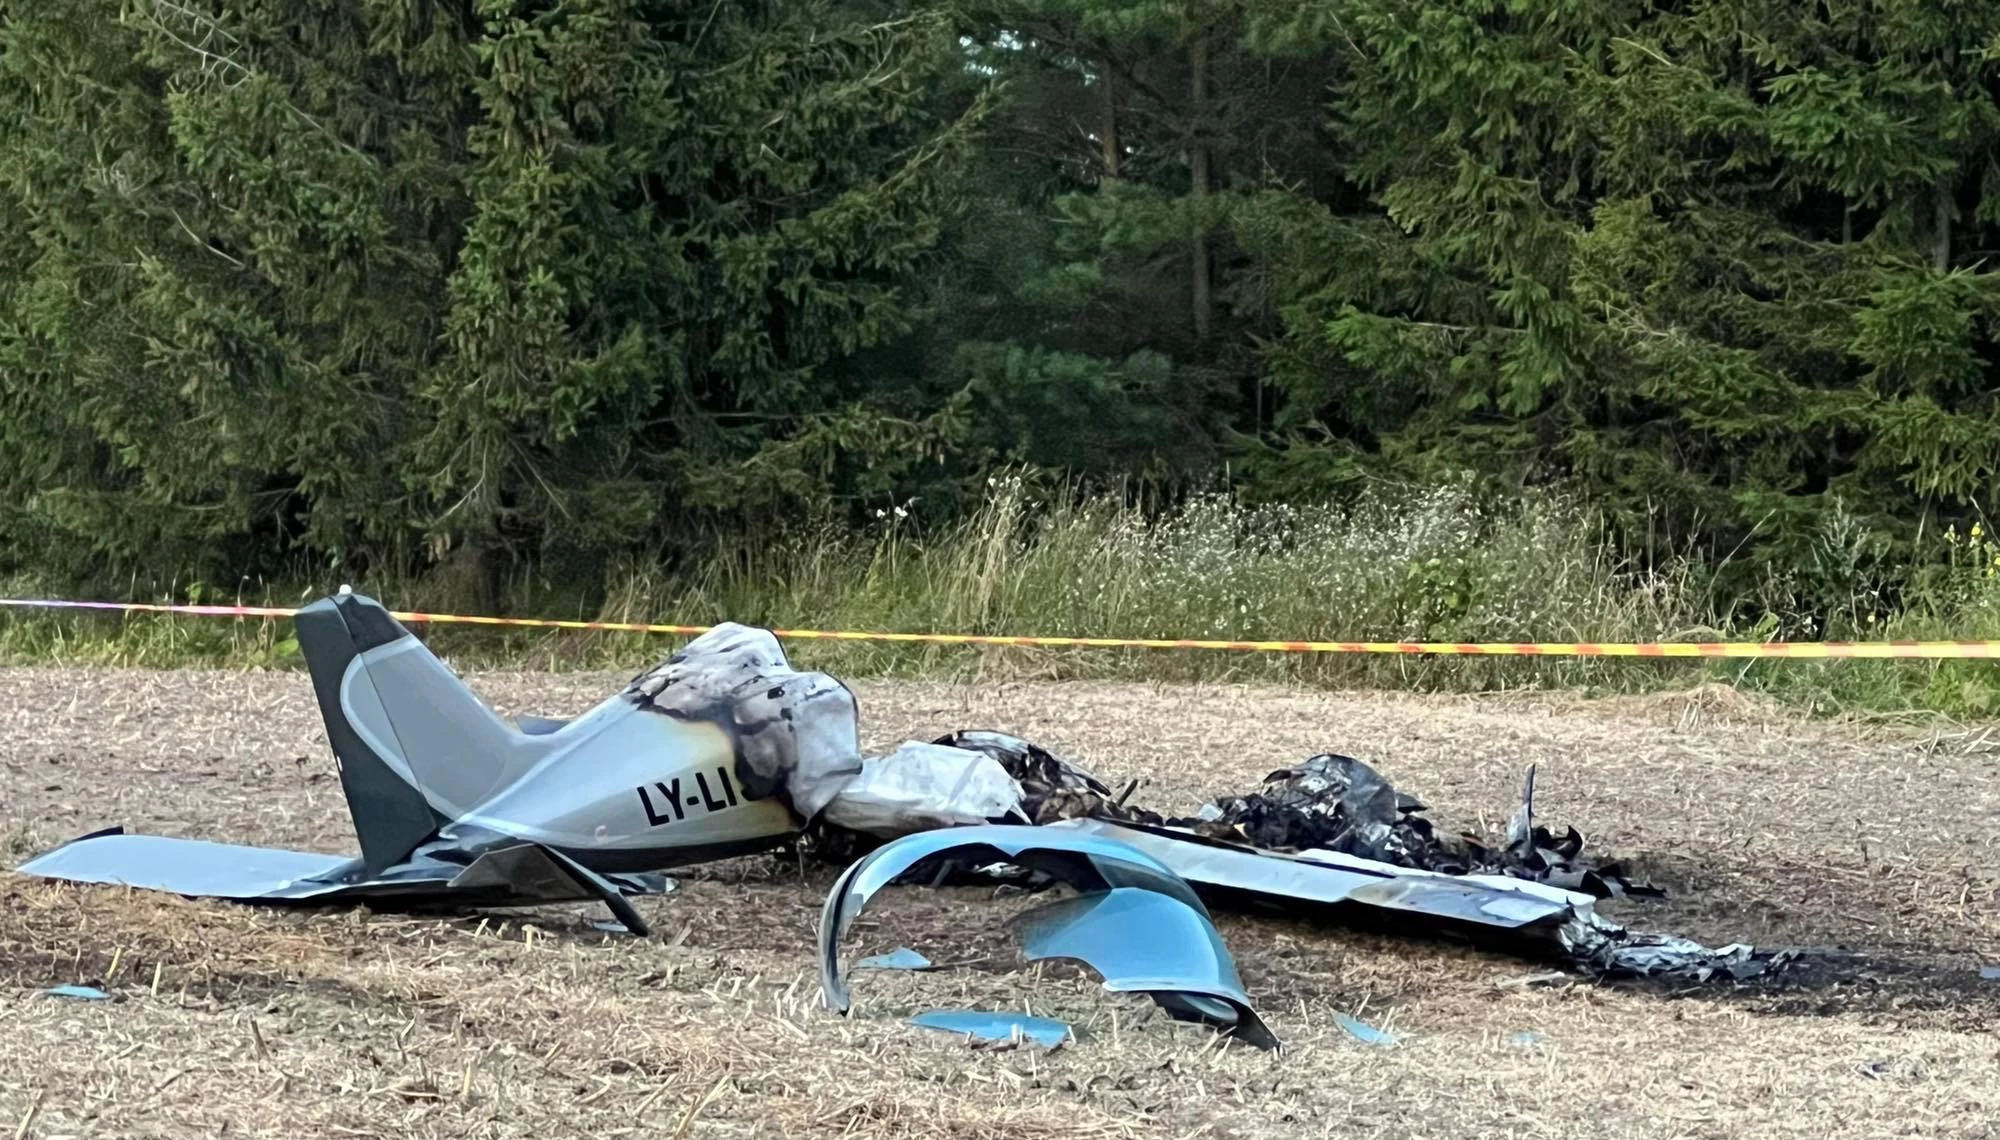 Kauno rajone nuktrito ir užsidegė sportinis lėktuvas (PAPILDYTA: 2 žmonės žuvo, nuotraukos iš įvykio vietos)